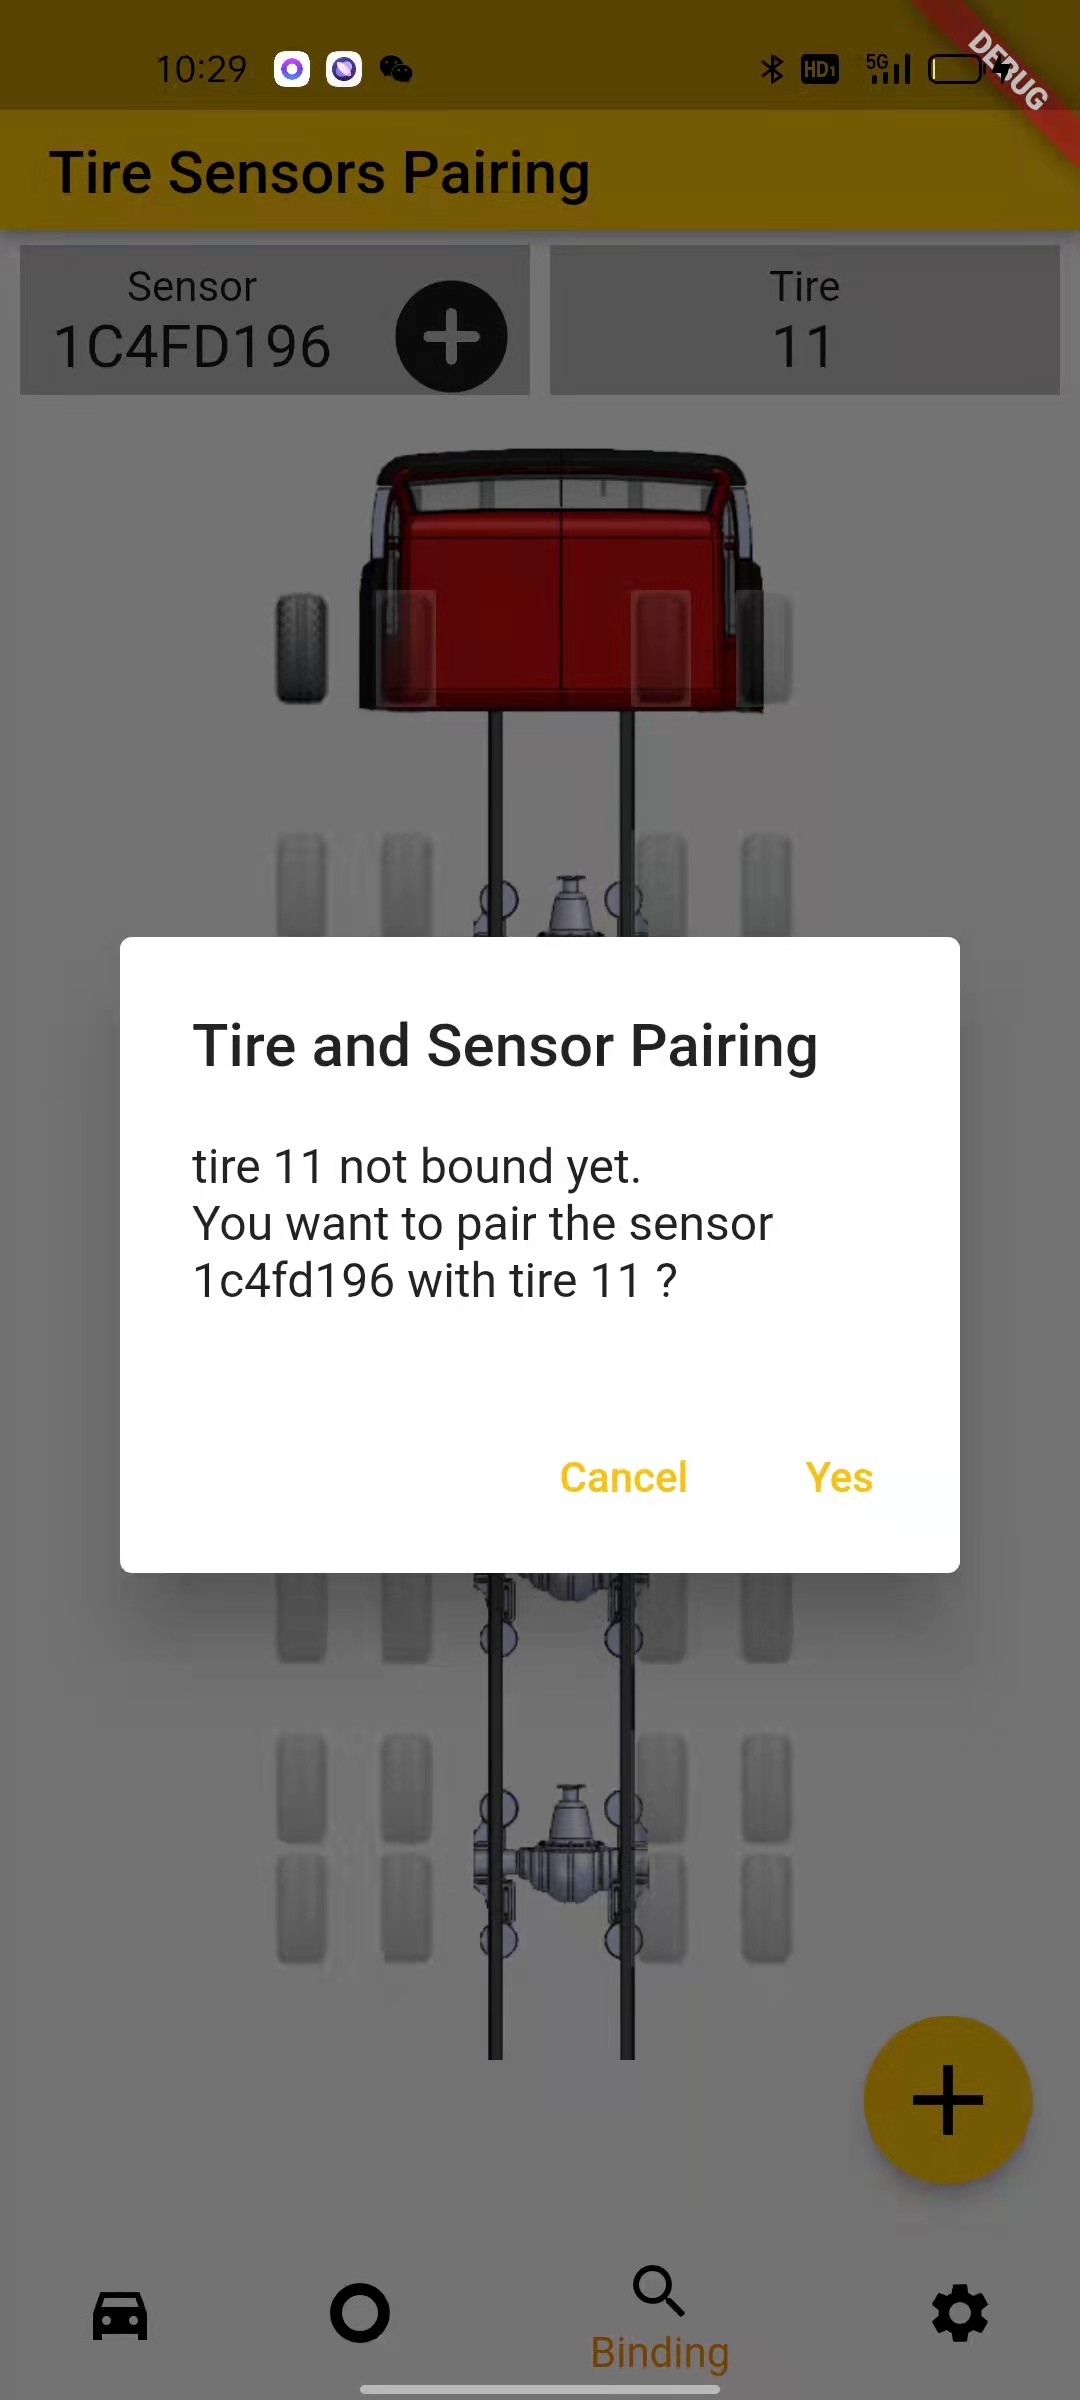 tpms app bindings of tires and sensors